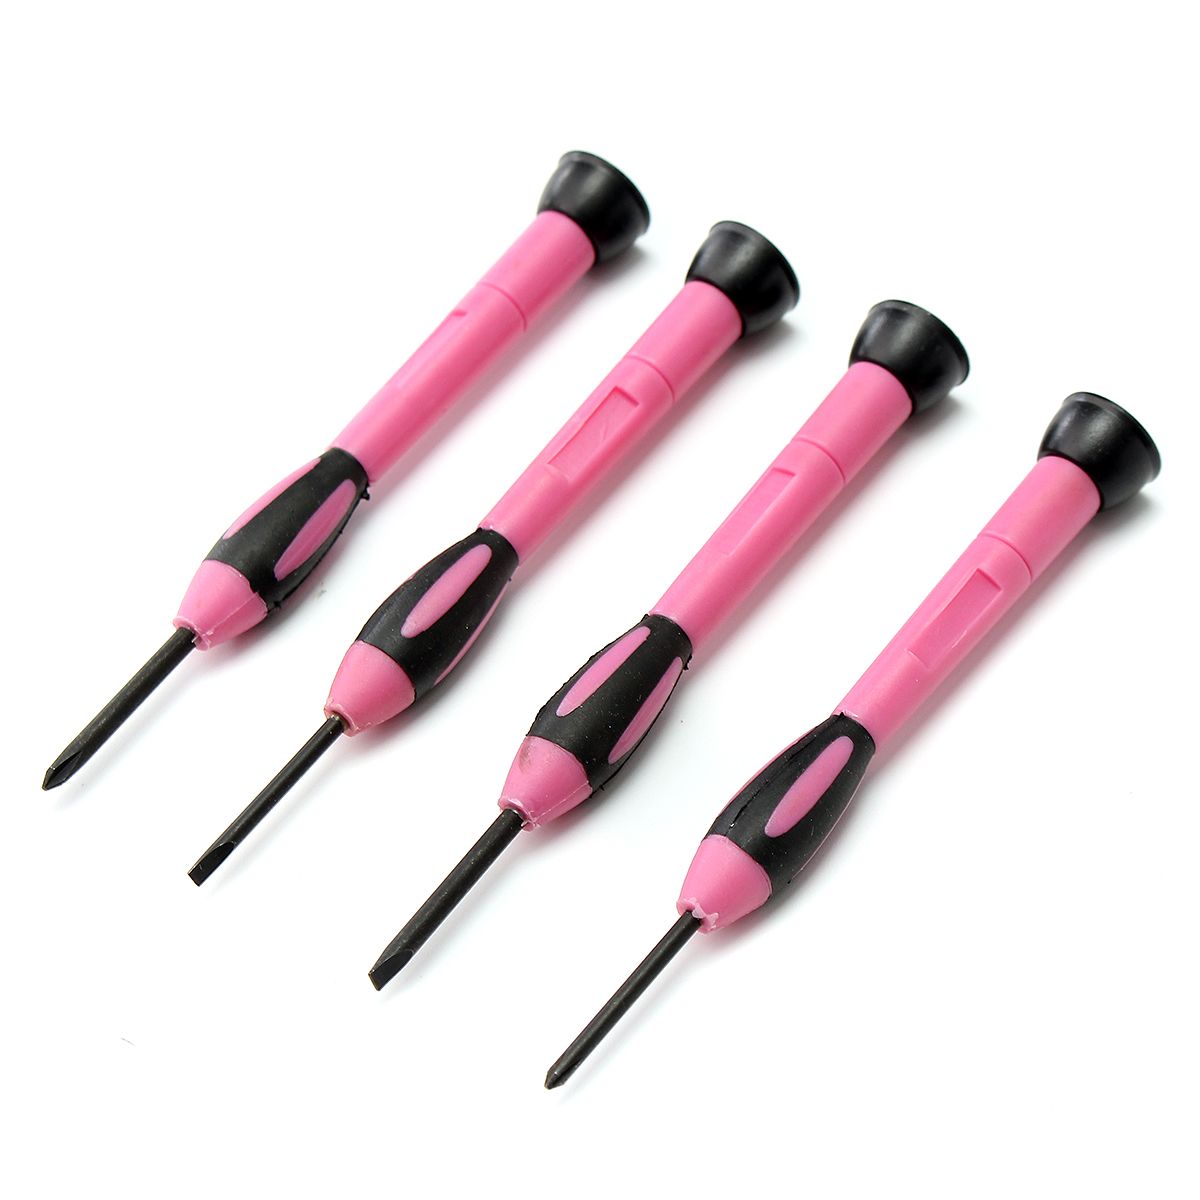 39Pcs-Pink-Repair-Tool-Set-Household-Kit-Womens-Ladies-Carrying-Toolbox-Repair-Box-Case-1288027